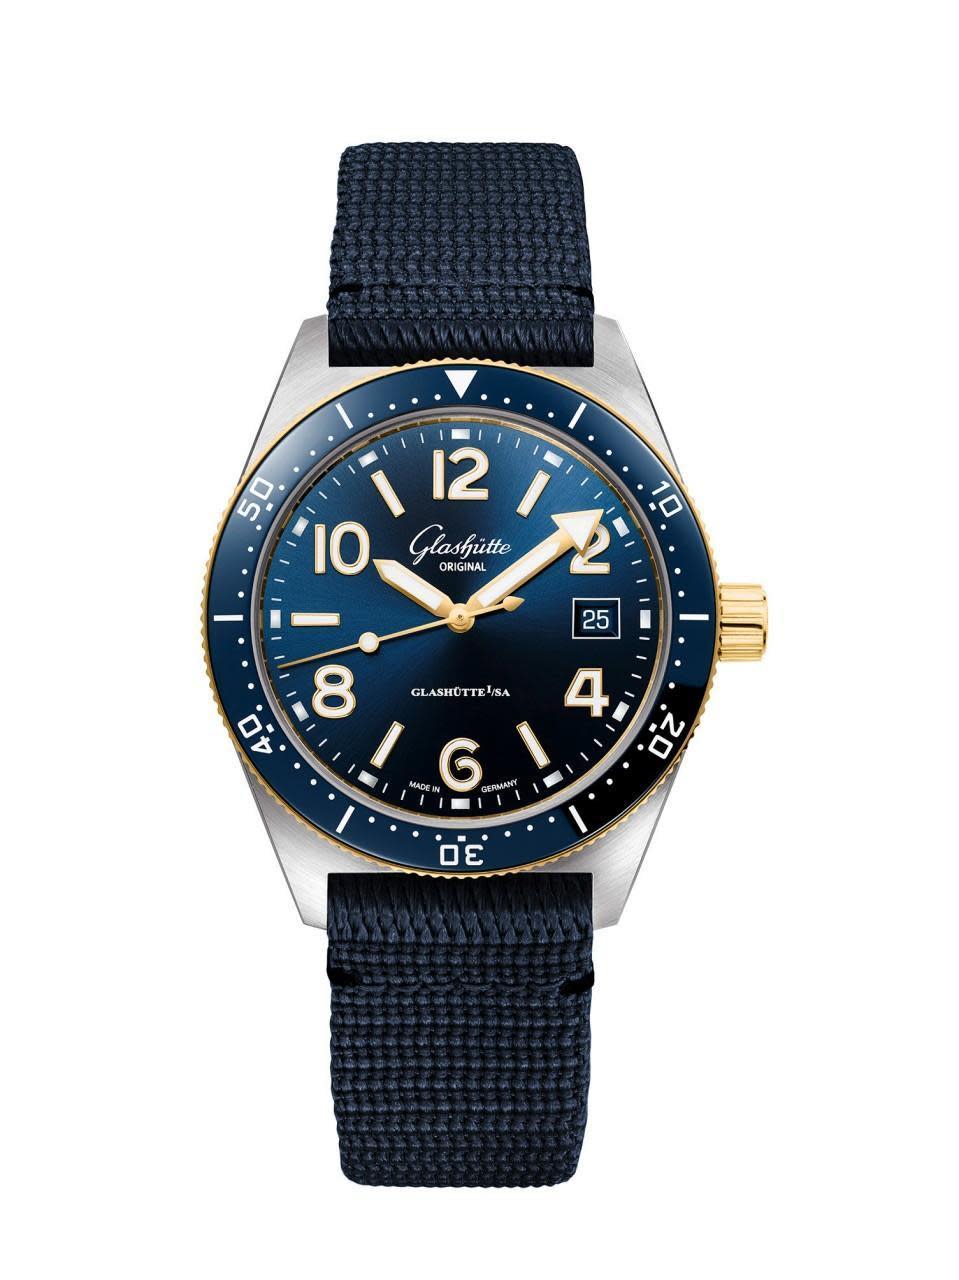 格拉蘇蒂原創SeaQ半金藍面錶款。